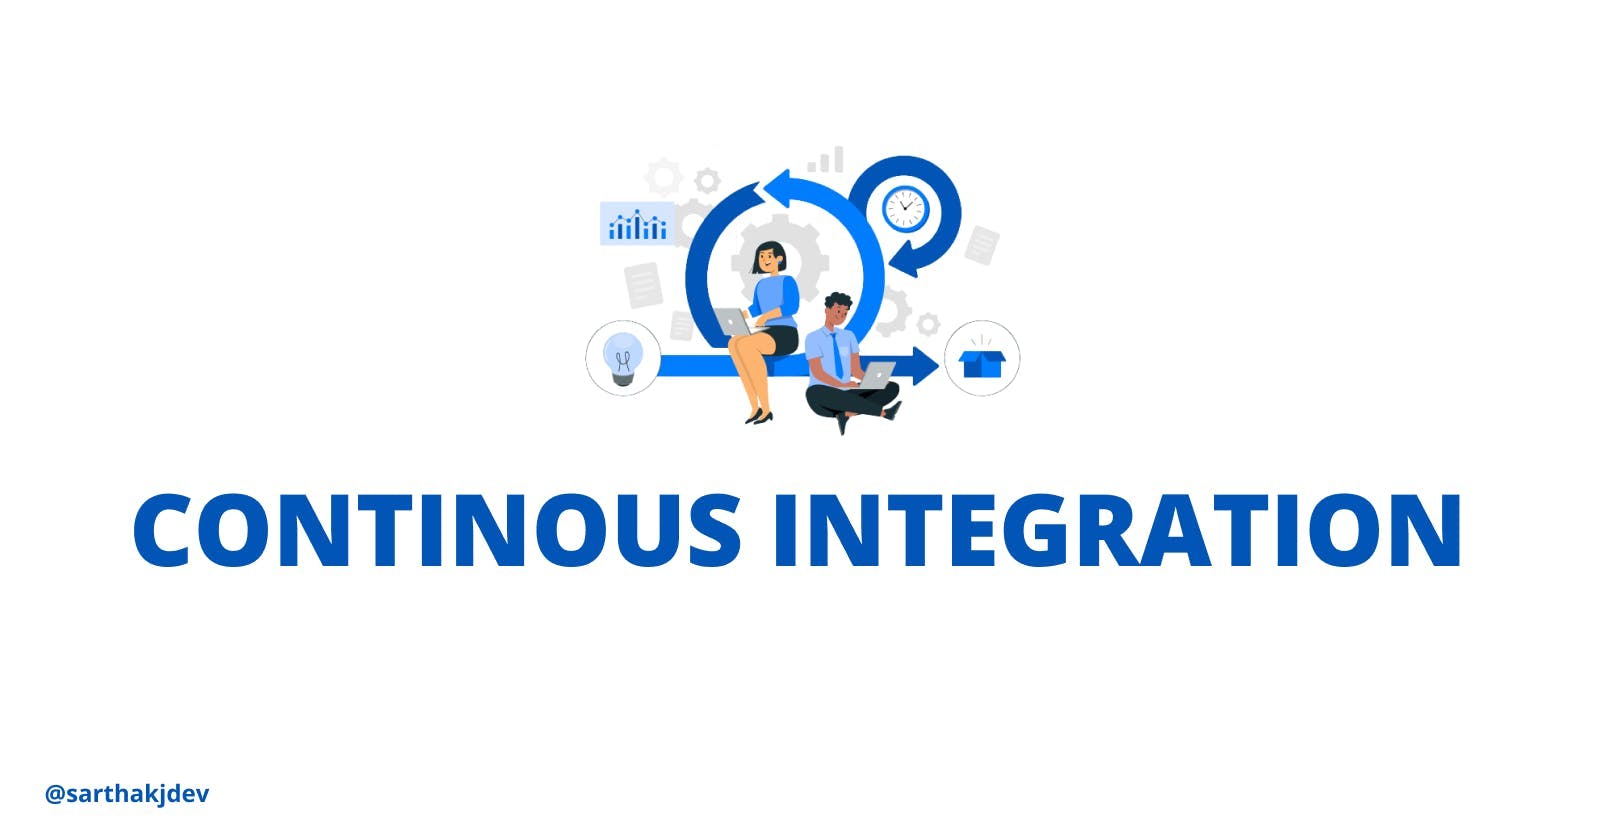 Continuous Integration (CI)